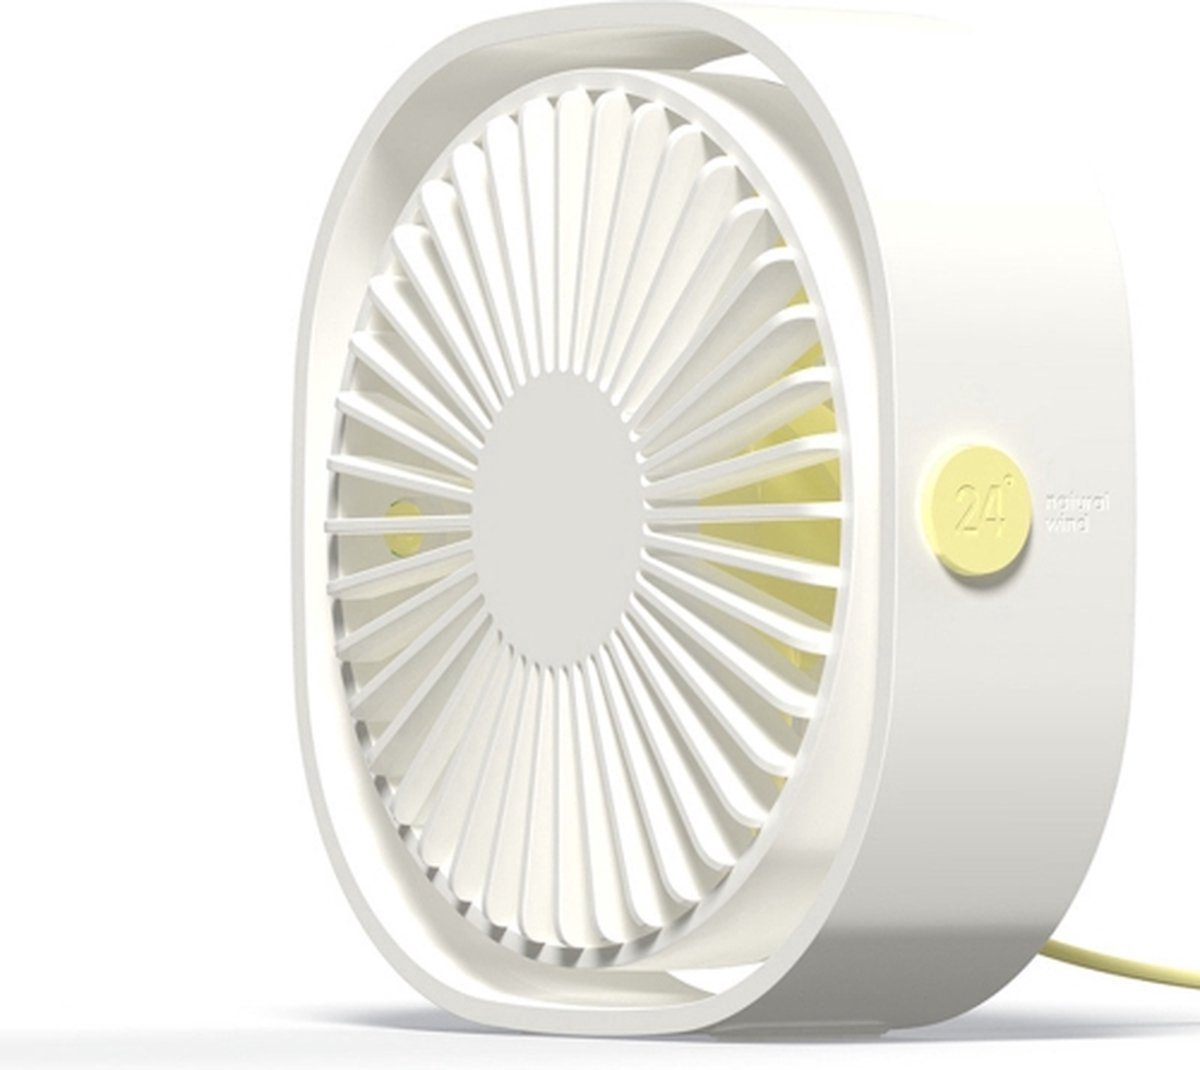 360 graden rotatie Wind 3 snelheden Mini USB Desktop Fan (wit)